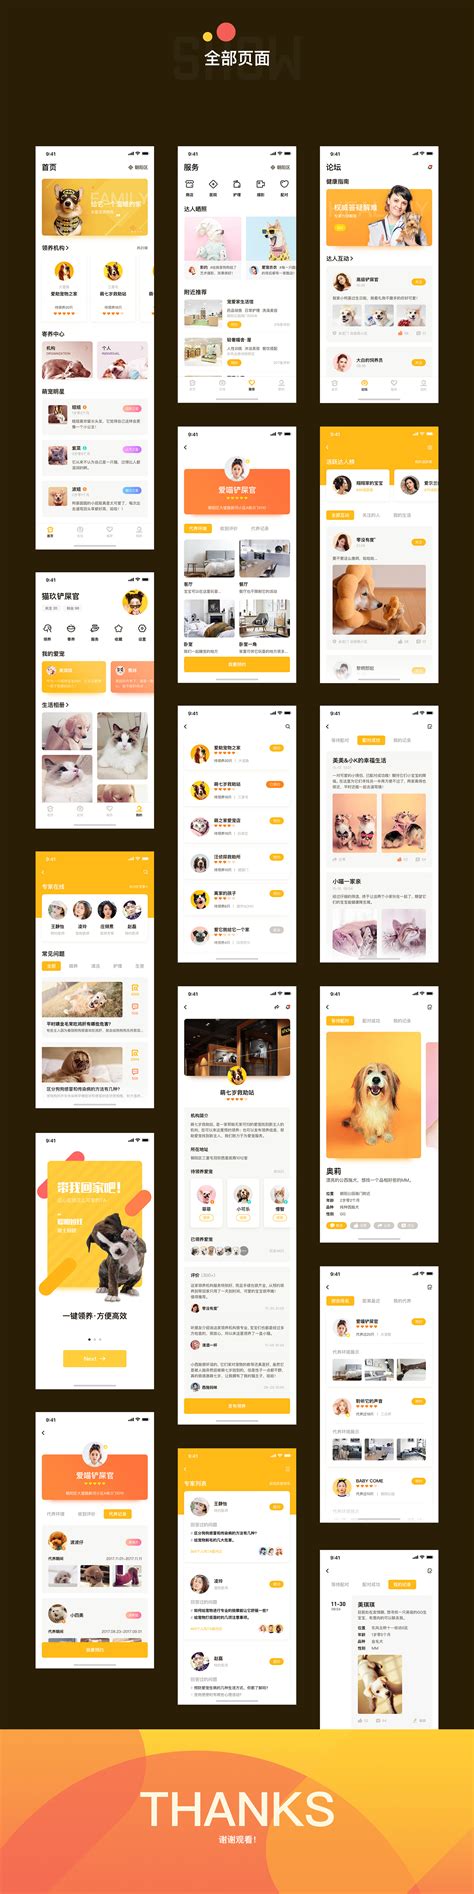 黄色风格app启动引导页ui界面设计移动端手机网页psd素材下载_懒人模板